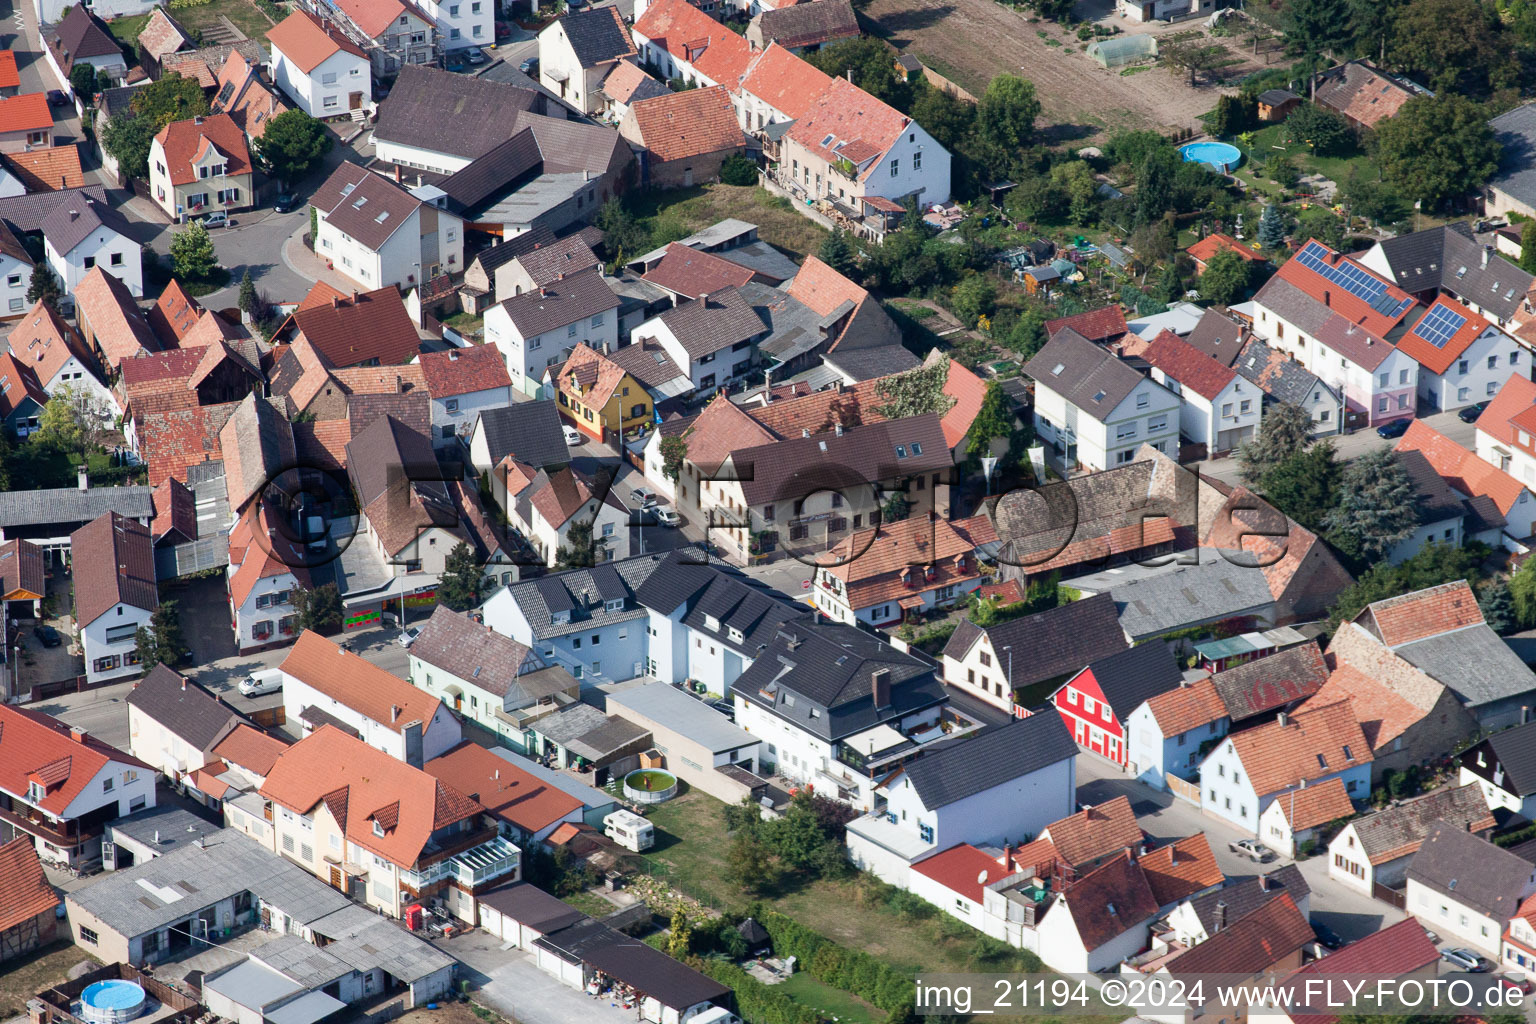 Vue aérienne de Vue des rues et des maisons des quartiers résidentiels à Hördt dans le département Rhénanie-Palatinat, Allemagne